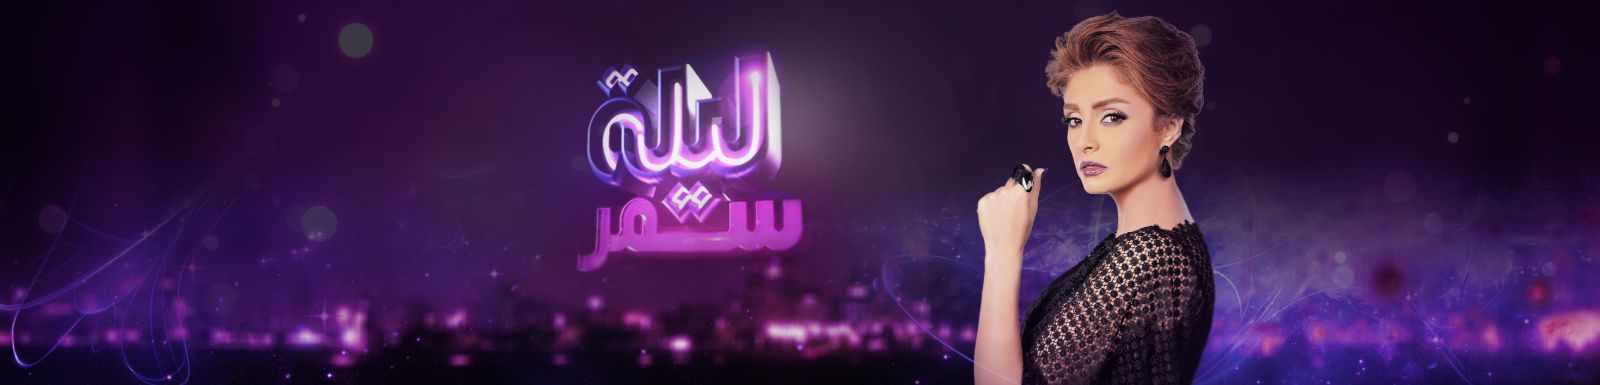 موعد وتوقيت عرض برنامج ليلة سمر 2015 على قناة Mbc مصر 2